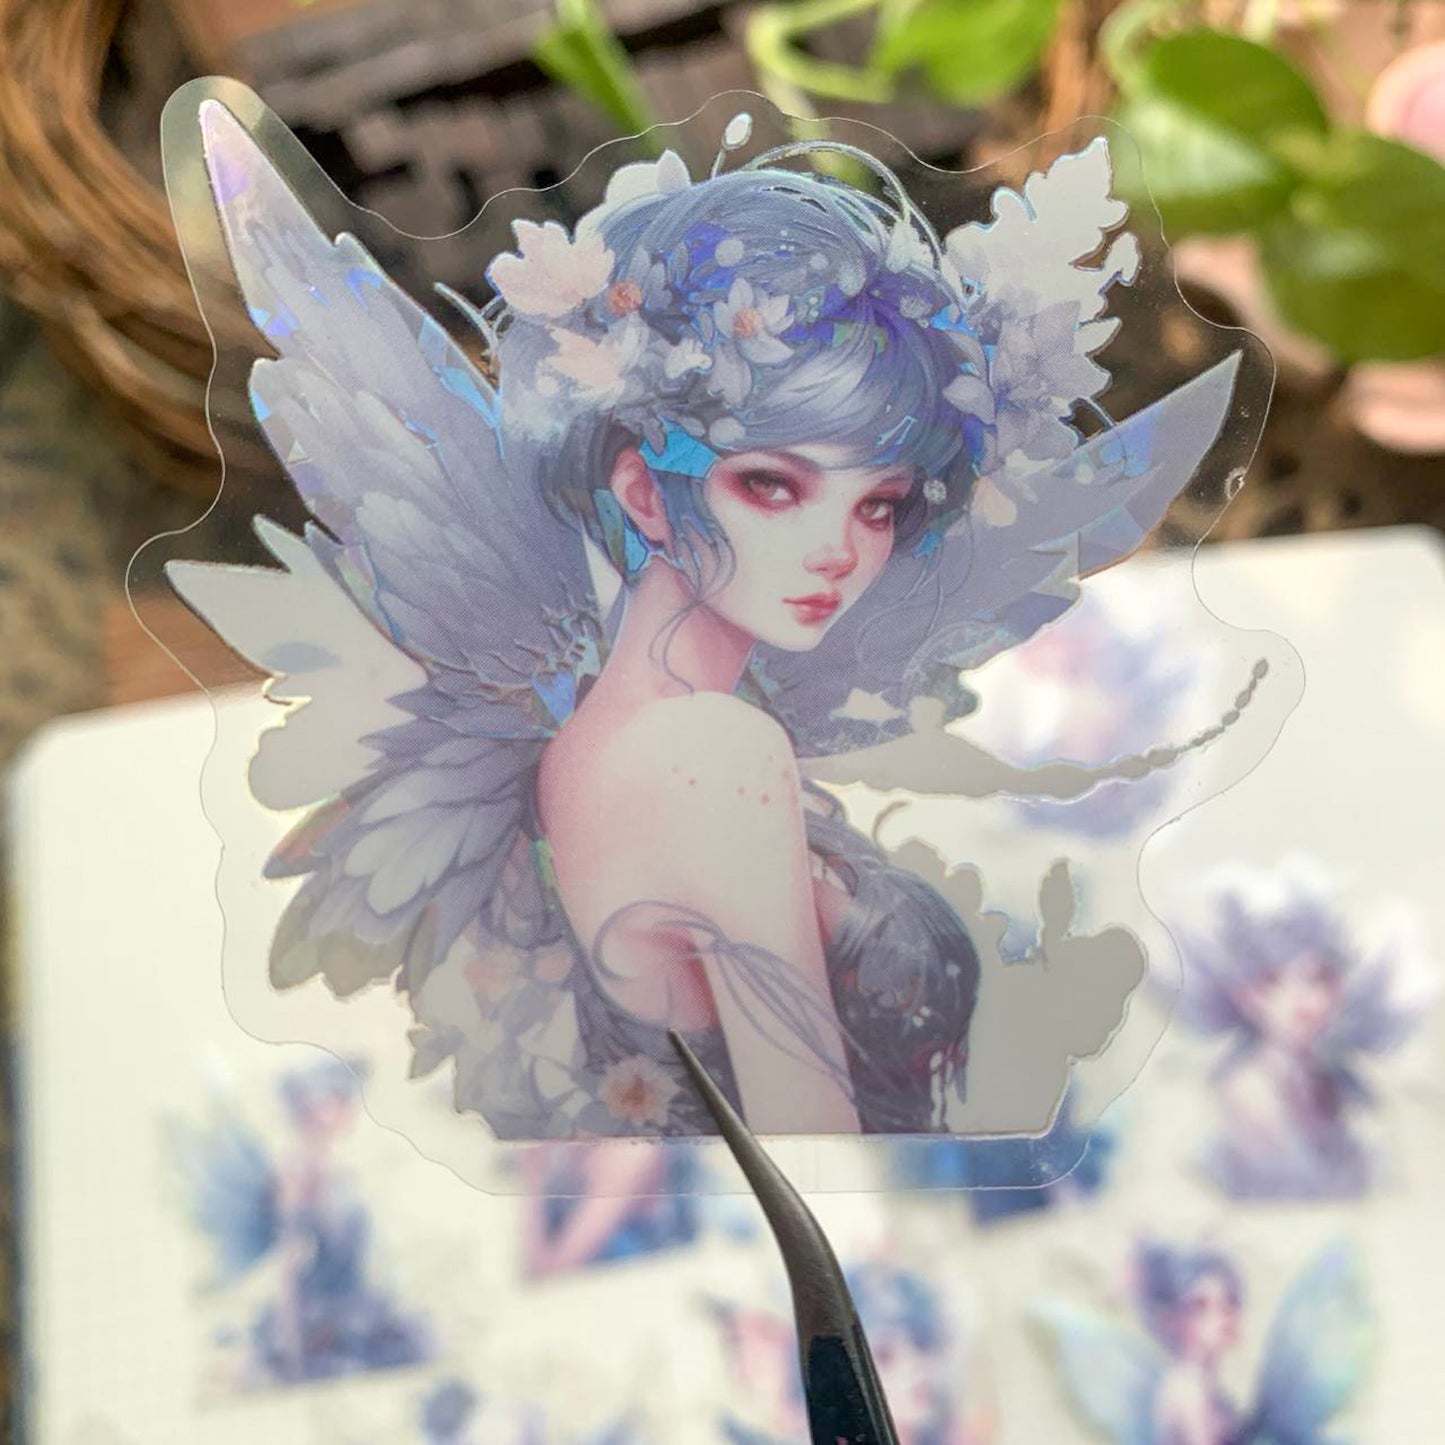 SZHS004 Flower Fairy Bronzing Sticker 10Pc